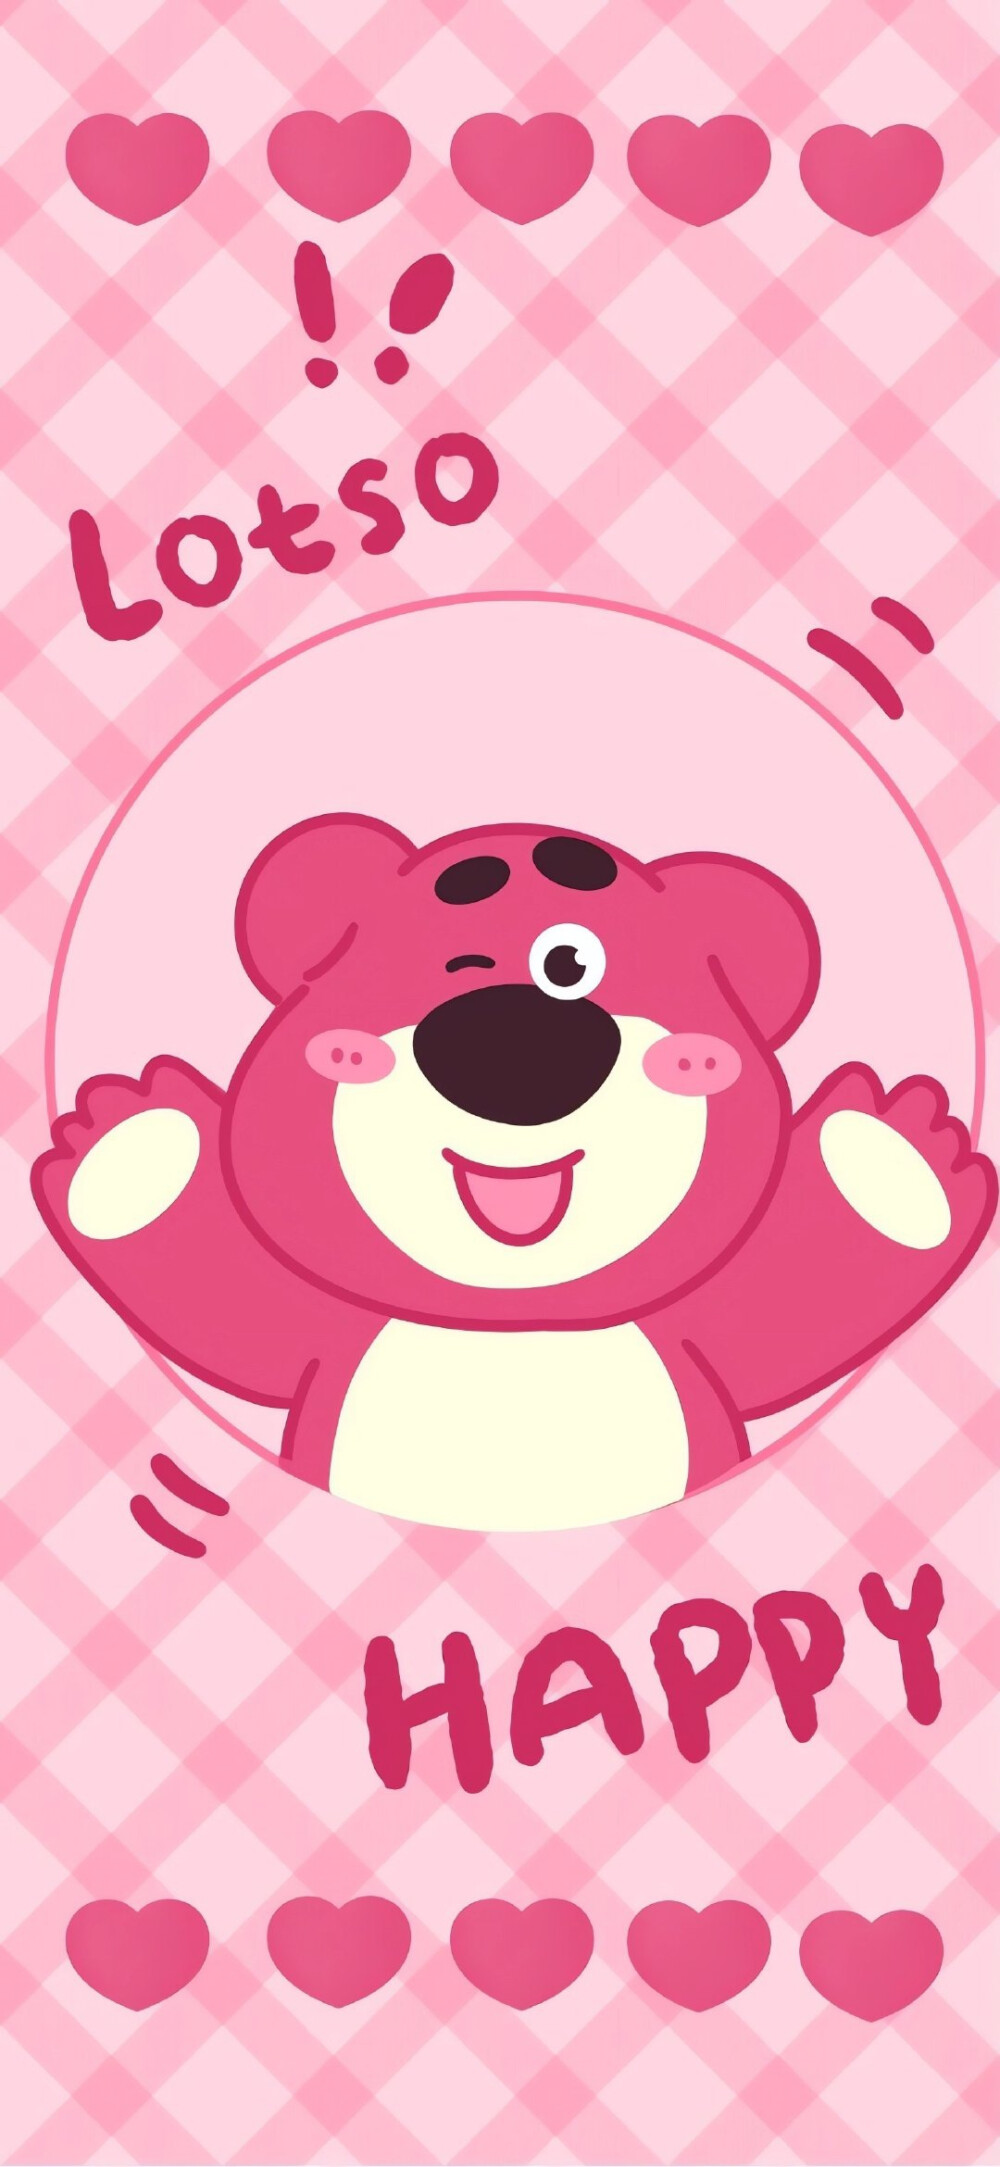 玩具总动员草莓熊粉粉甜甜的少女心小红… 